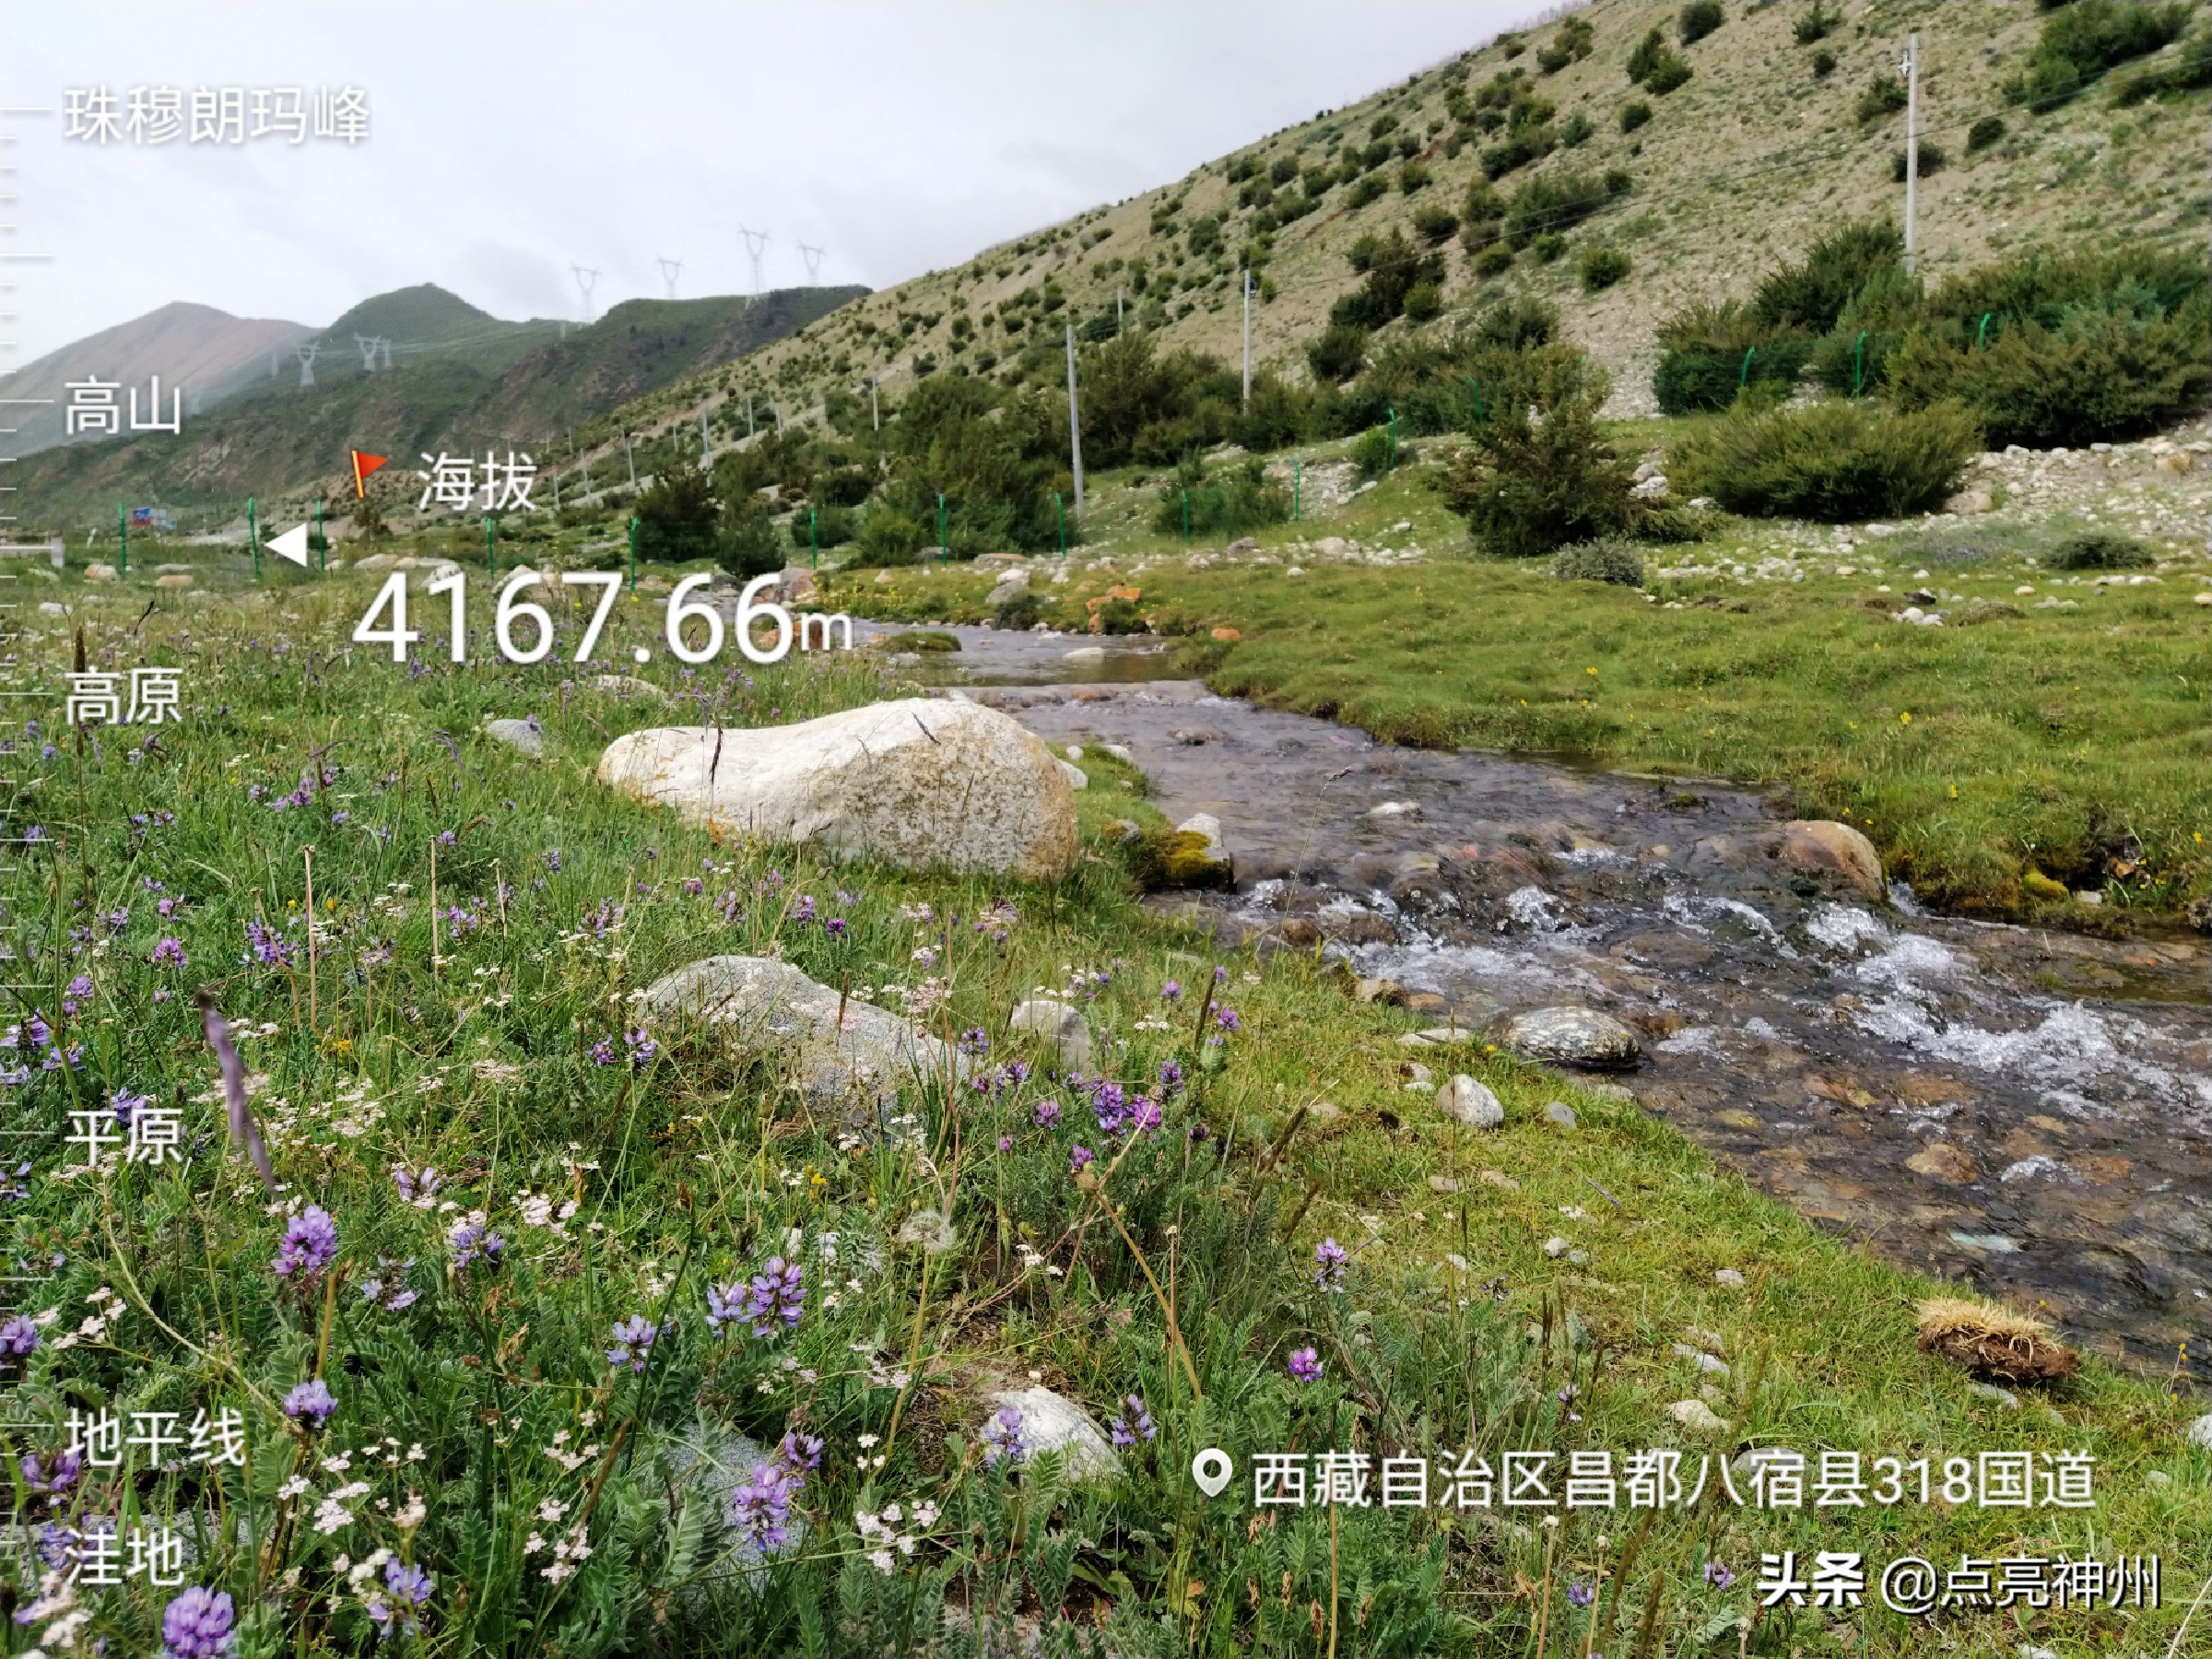 318自驾西藏攻略6：然乌湖和藏王故里，是最写意的一段自驾旅程